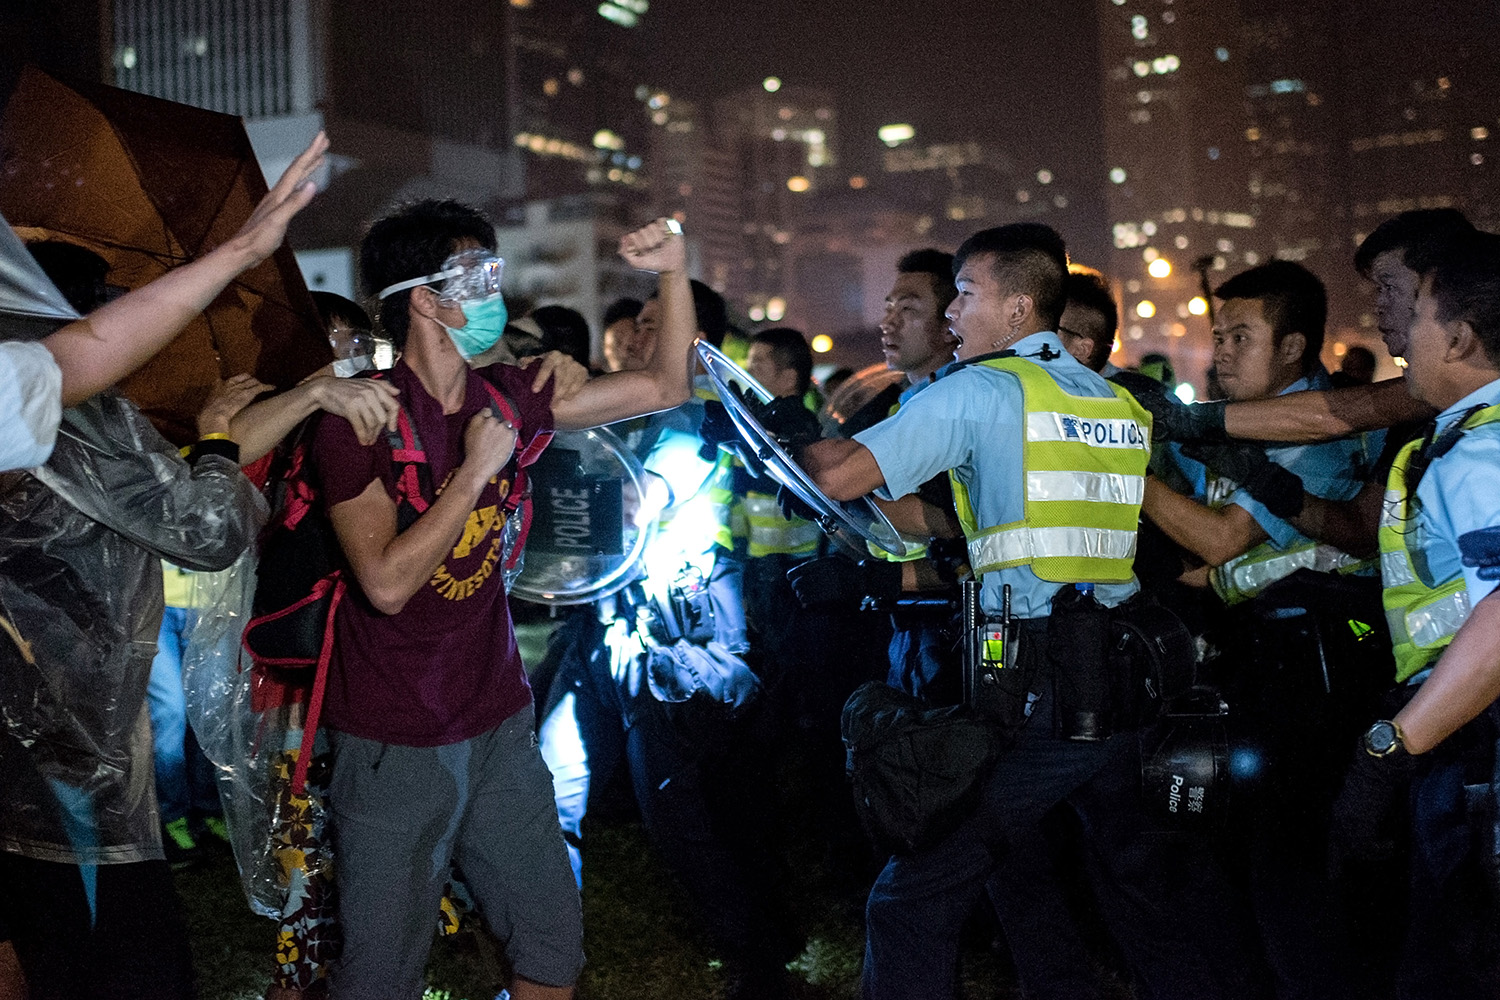 Duro enfrentamiento con la Policía enfurece a los manifestantes en Hong Kong